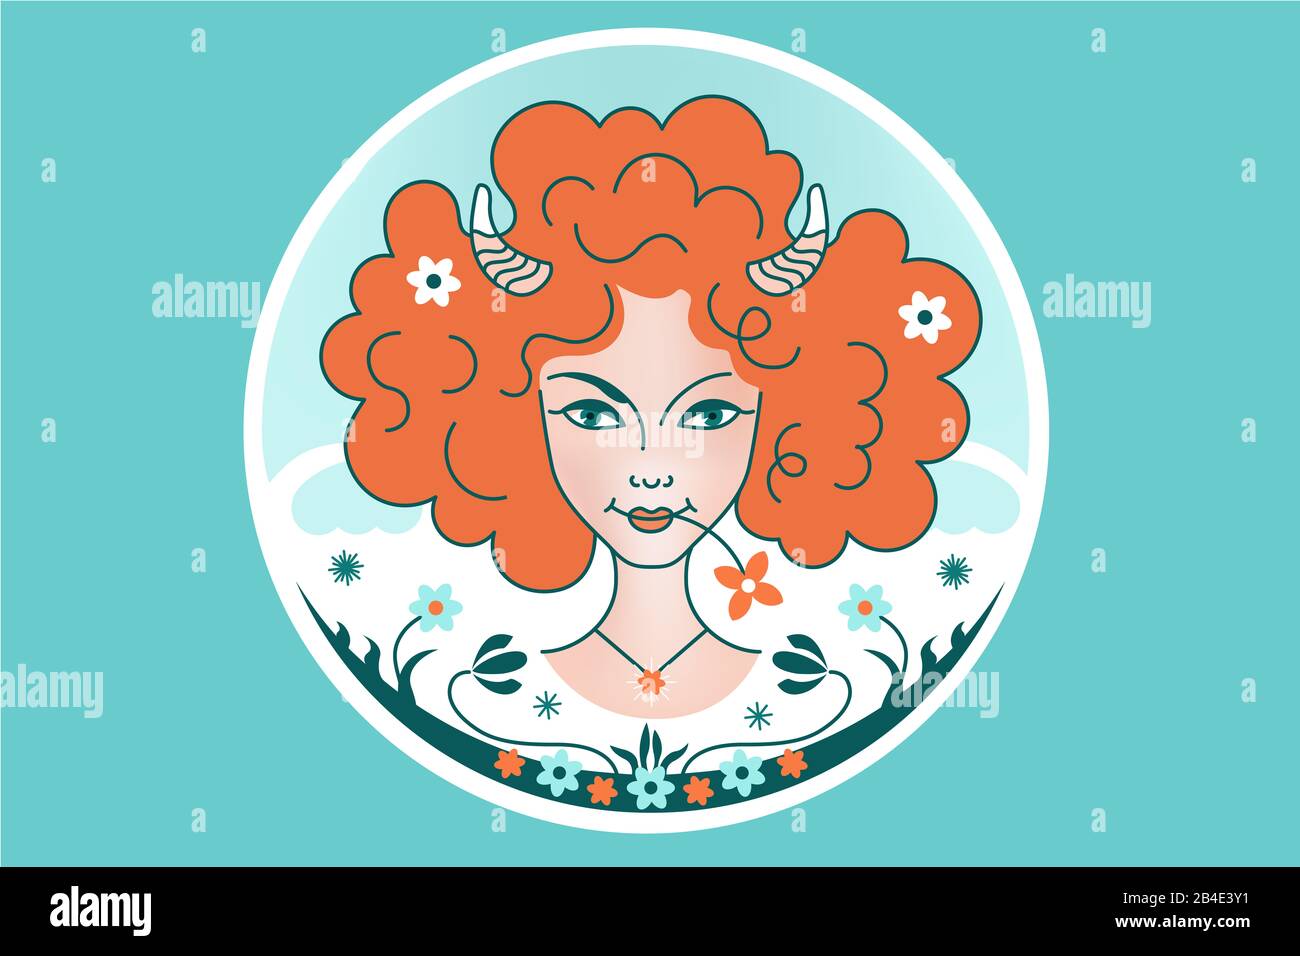 Signo de la constelación del zodiaco de Aries, niña o mujer con pelo rojo  esponjoso, cuernos, flores, fondo azul. Ilustración de fantasía, ornamento  en un cuento de hadas s Fotografía de stock -